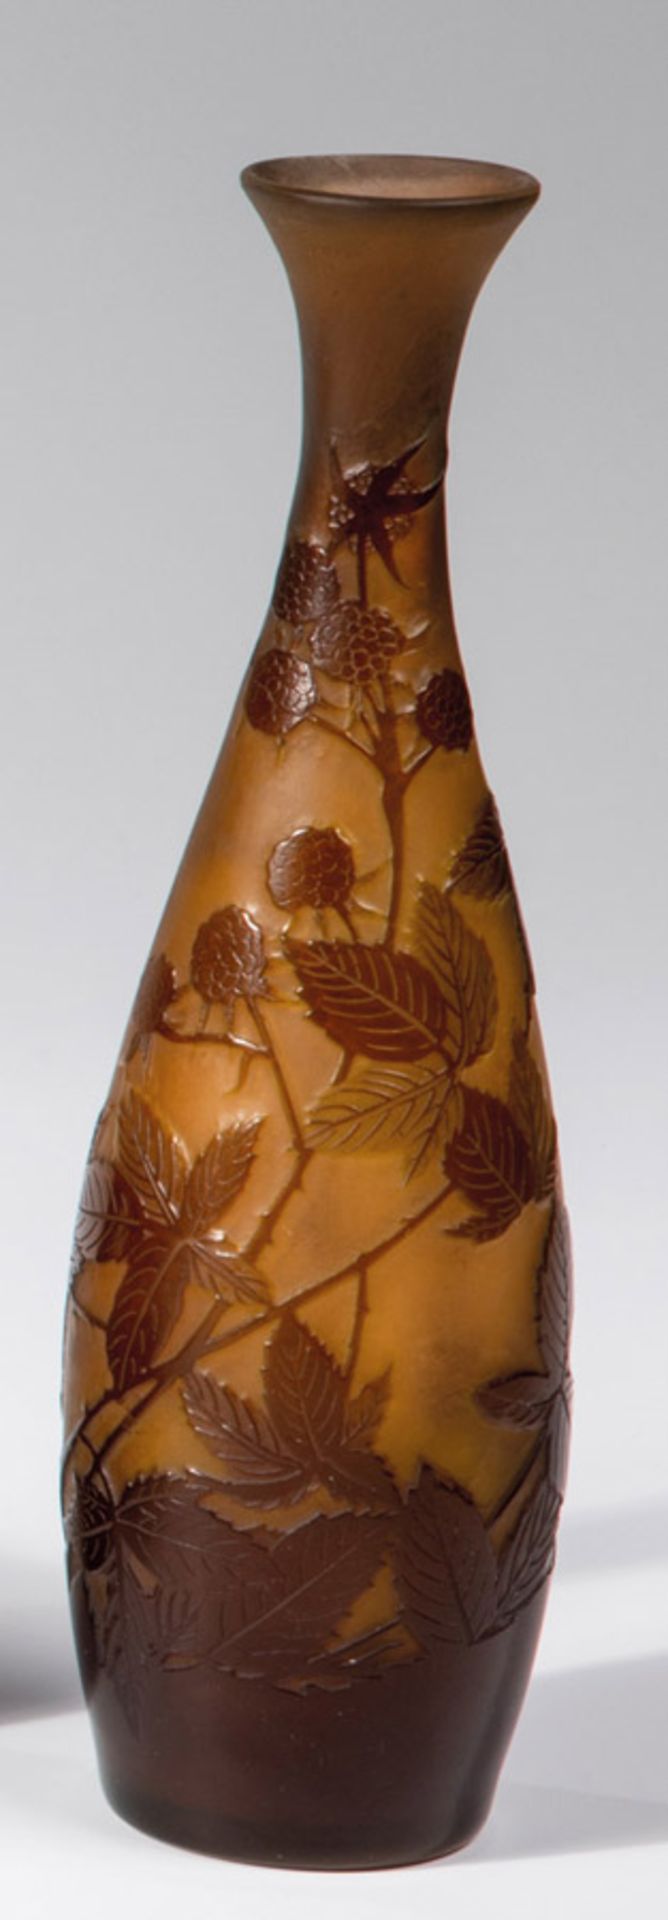 Vase mit BrombeerenEmile Gallé, Nancy, um 1906 Farbloses Glas, orangebraun unterfangen, hellgrün und